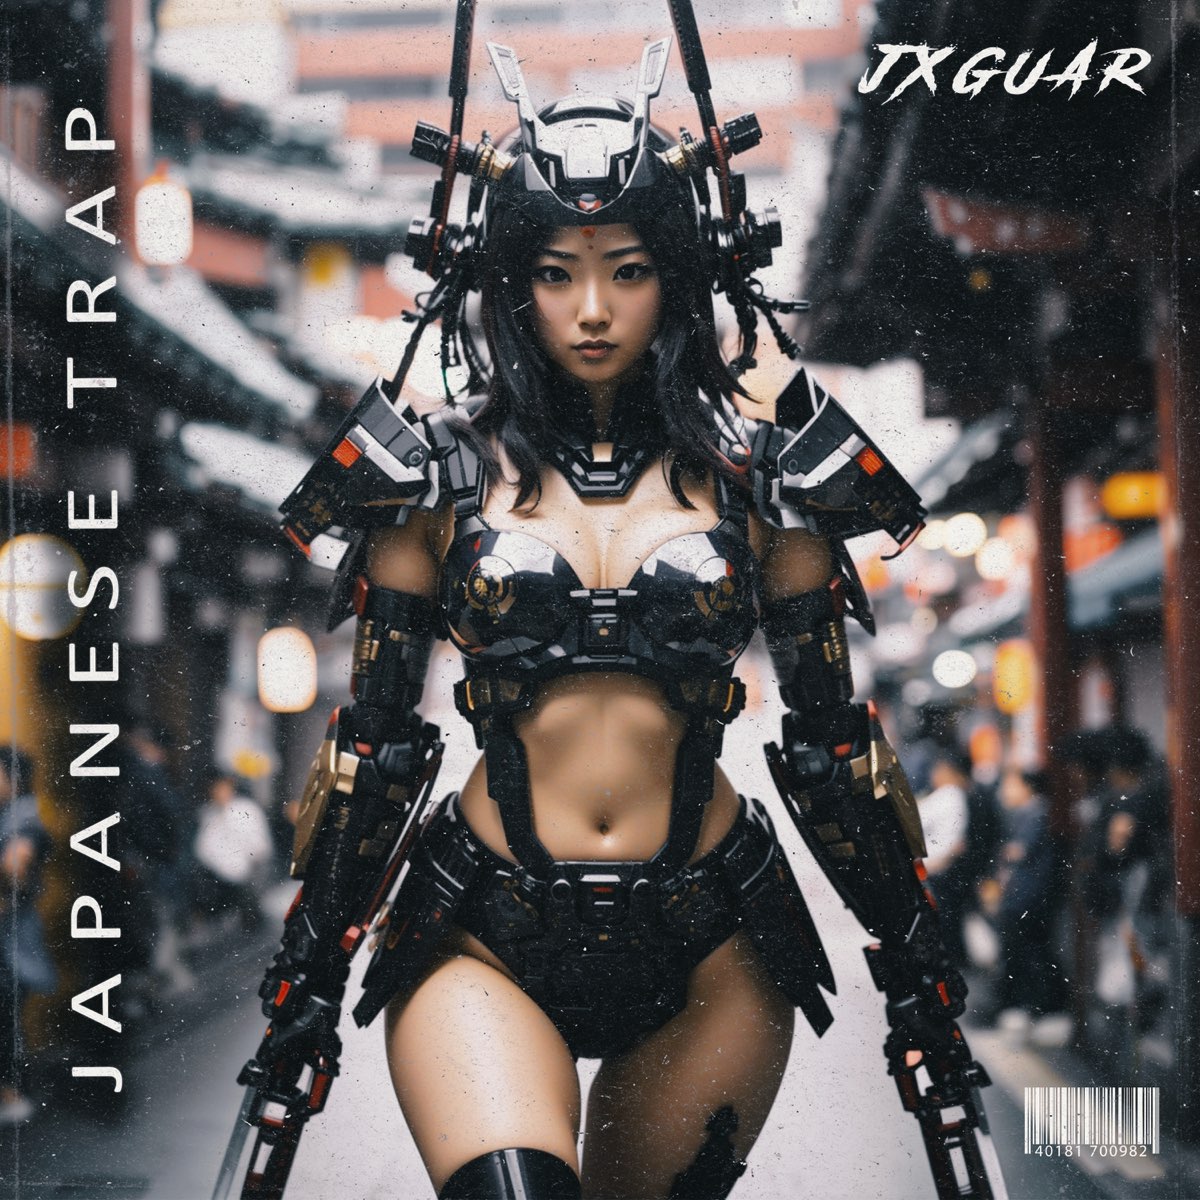 Japanese Trap (feat. Mestize) - EP” álbum de Jxguar en Apple Music